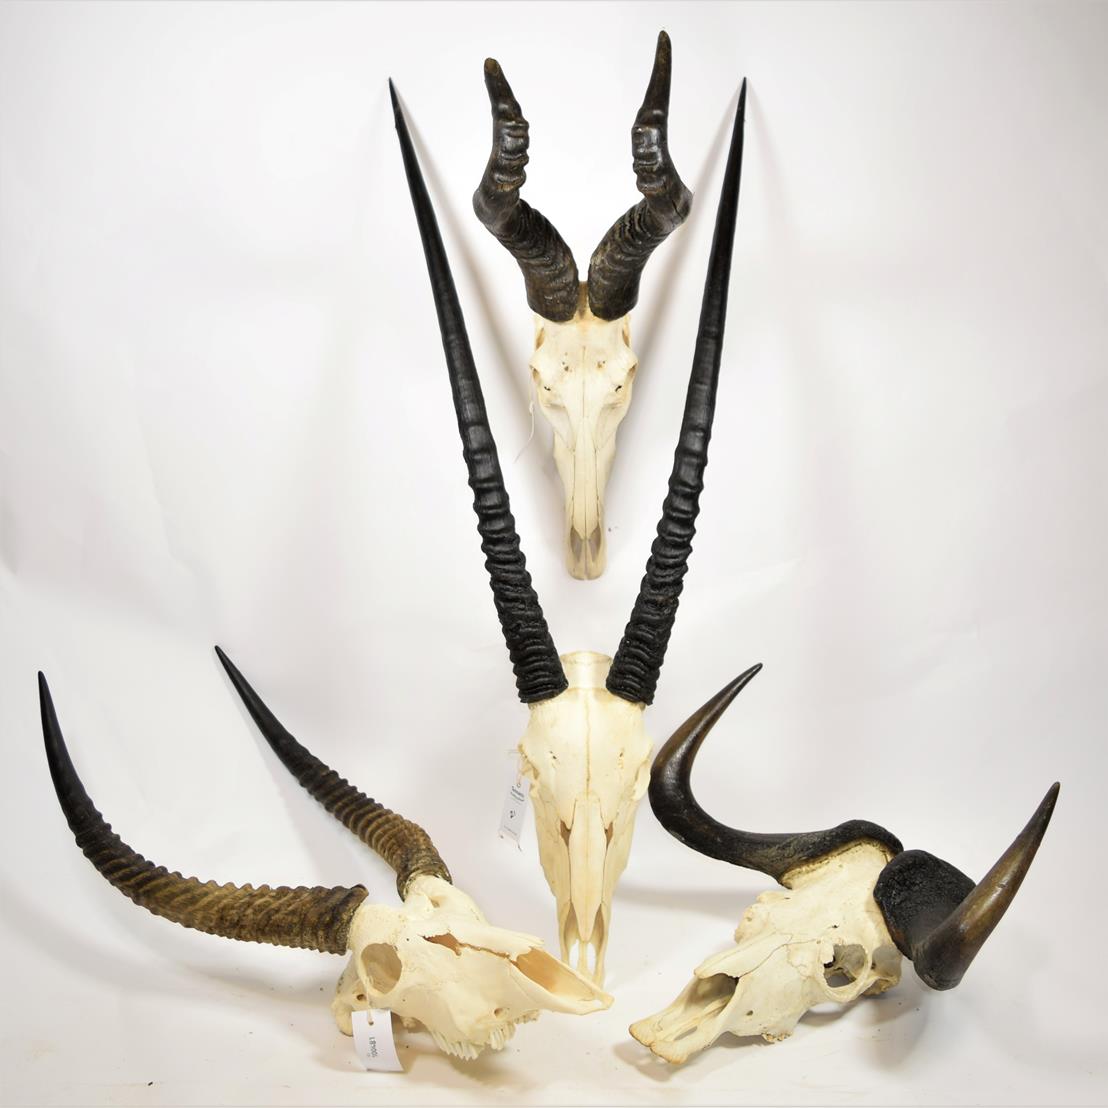 Horns/Skulls: A Selection of African Game Trophy Skulls, modern, a varied selection including -